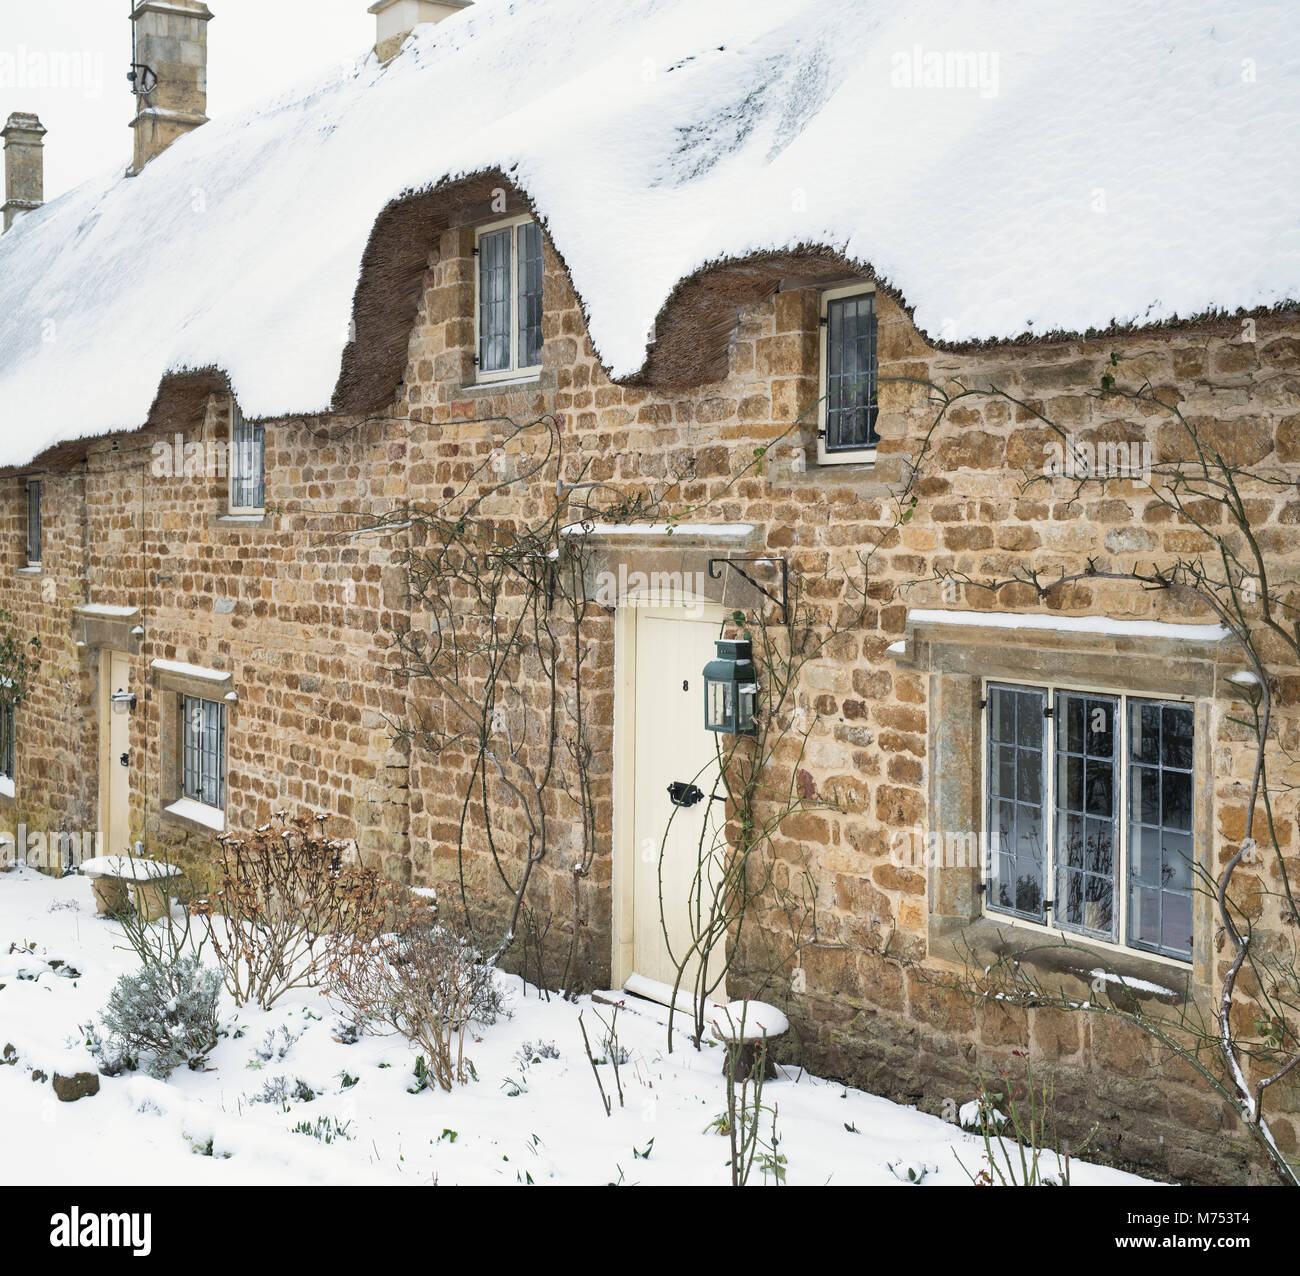 Strohgedeckten Steinhäusern im Winter Schnee. Große Tew, Cotswolds, Oxfordshire, England Stockfoto